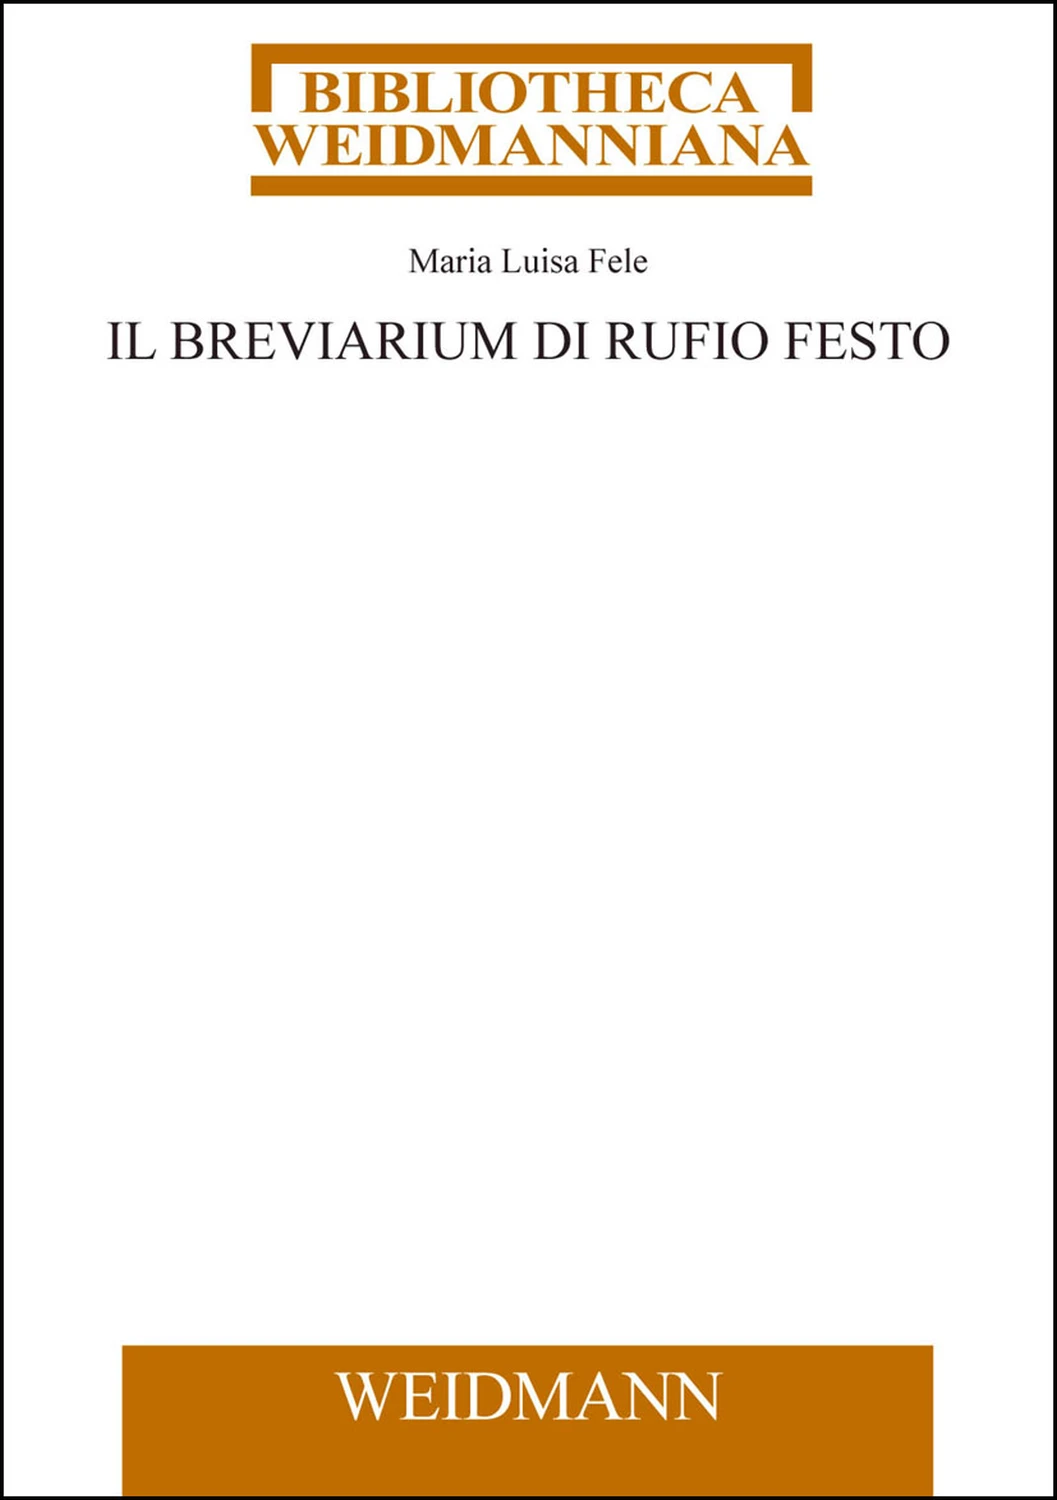 Prisciani Caesariensis Ars, Liber XVIII, Pars altera, 1